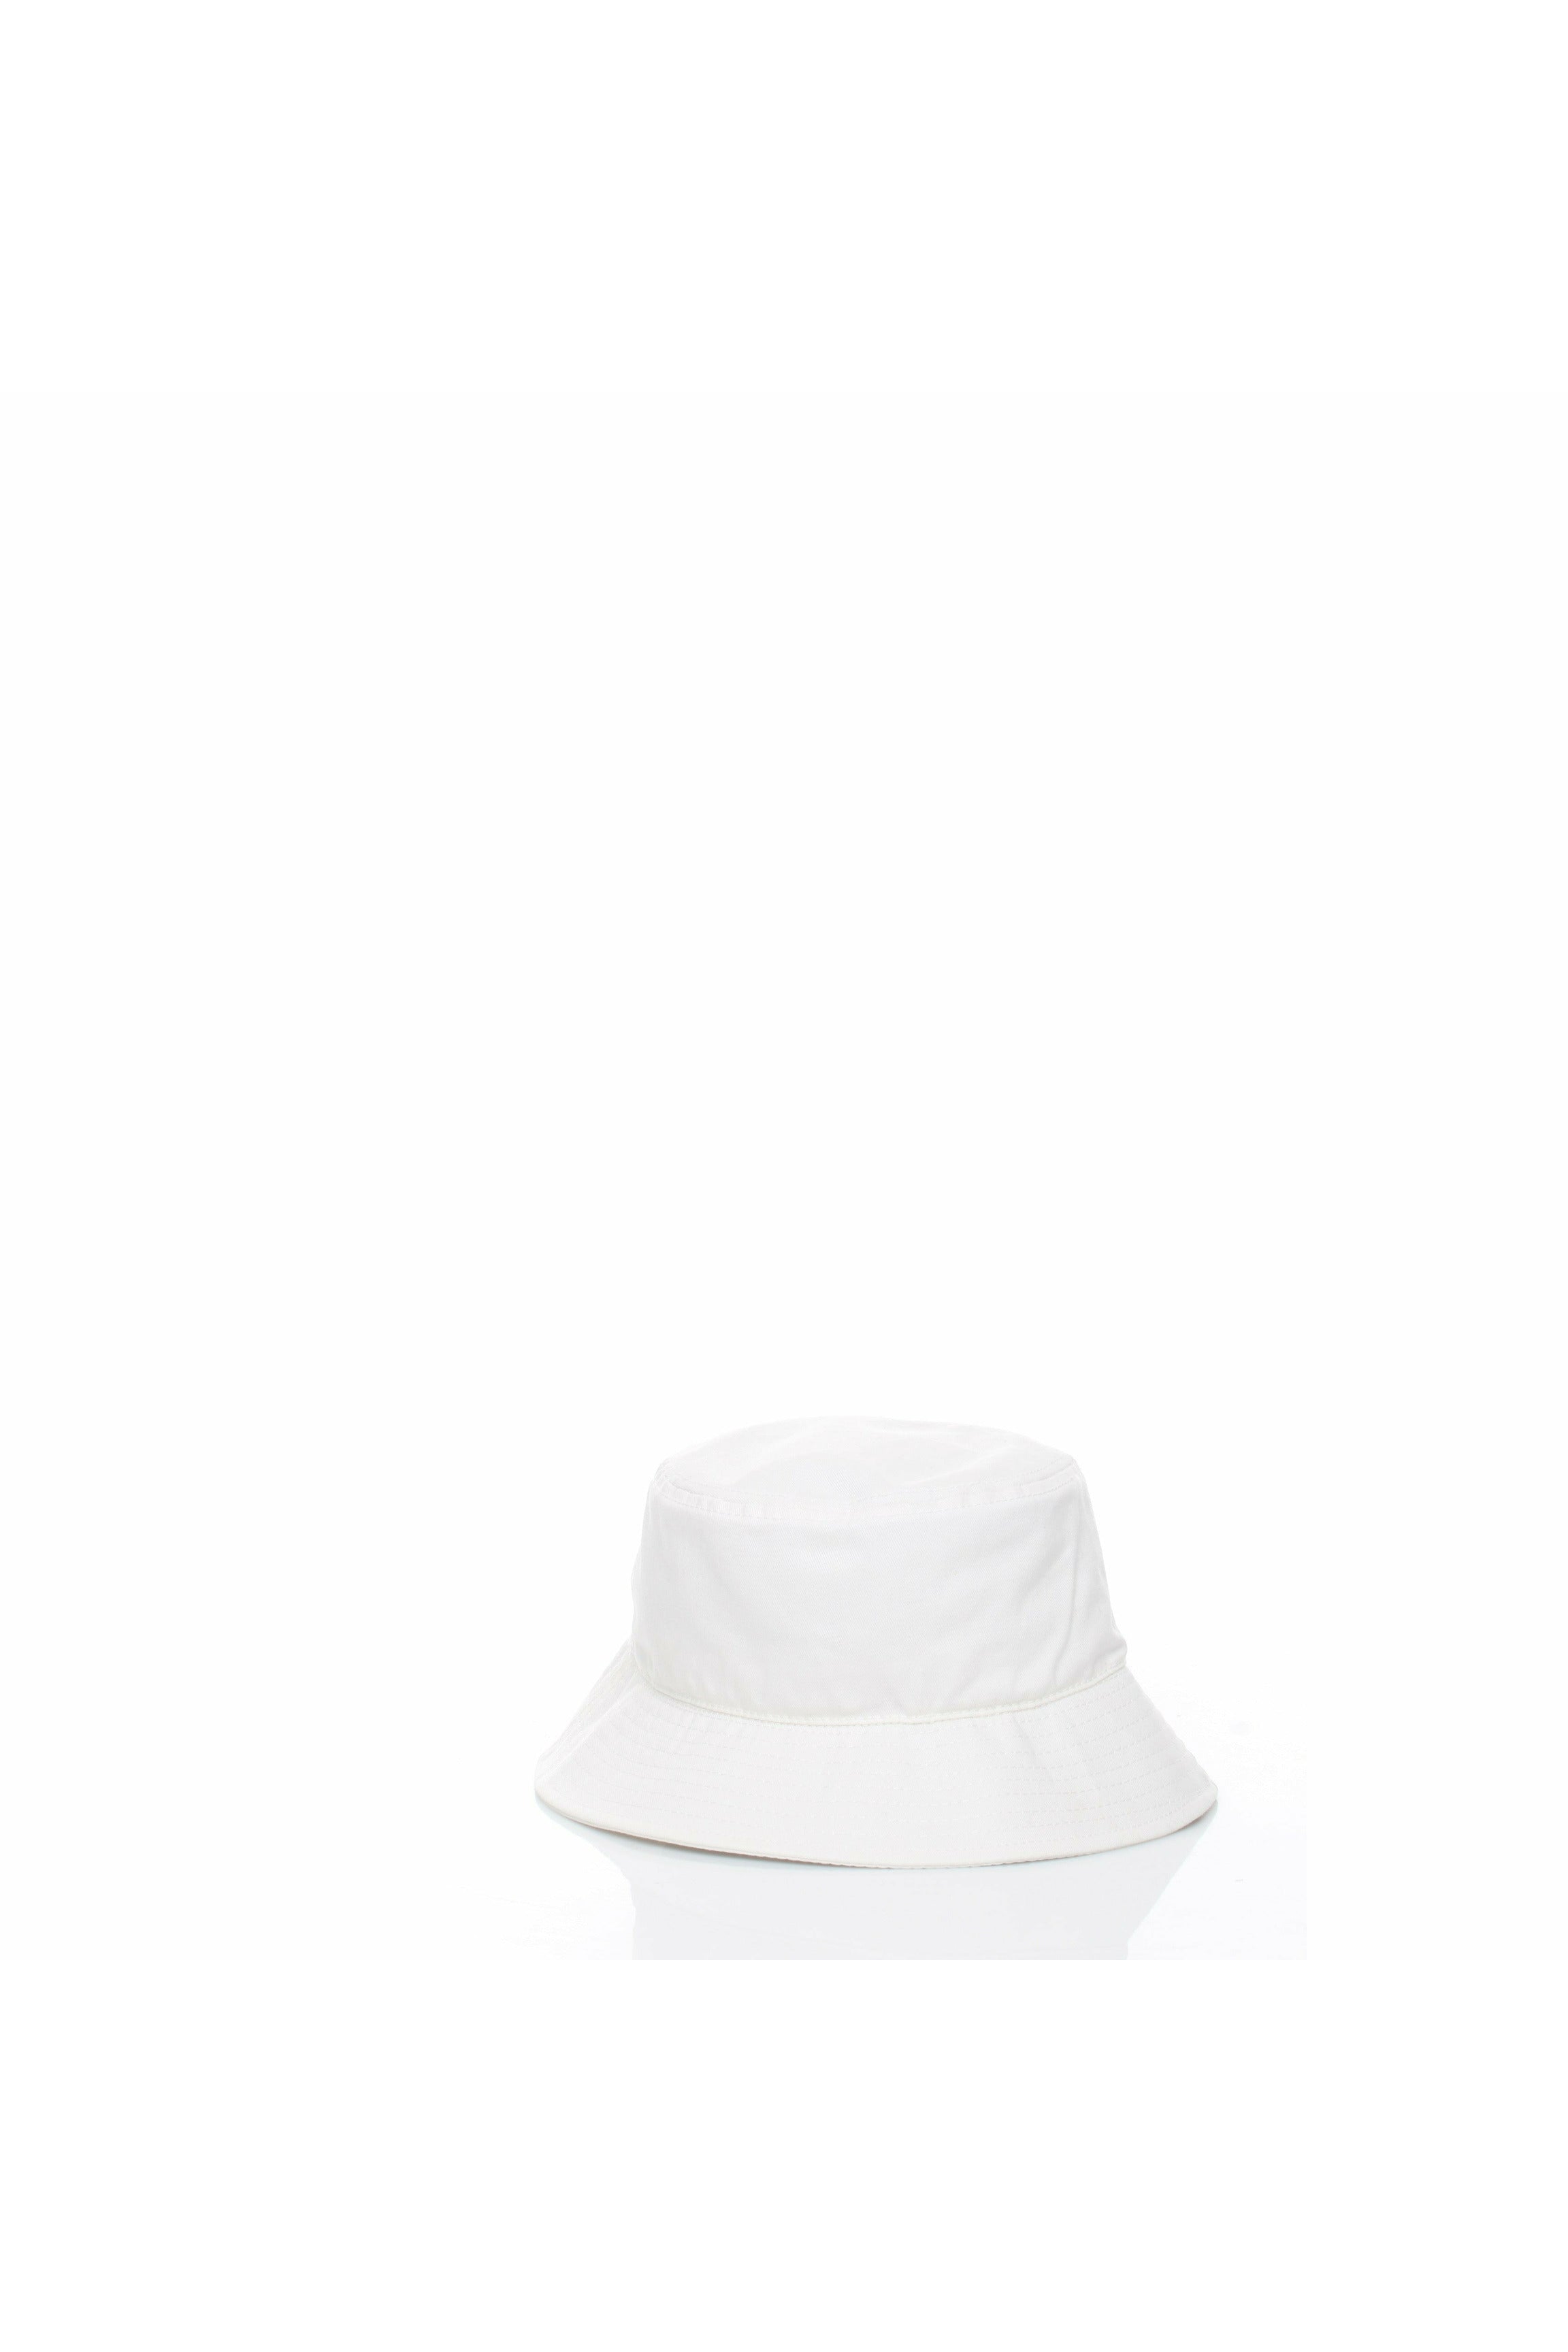 HINNOMINATE HNAM11CP cappello modello pescatore in cotone con logo a contrasto